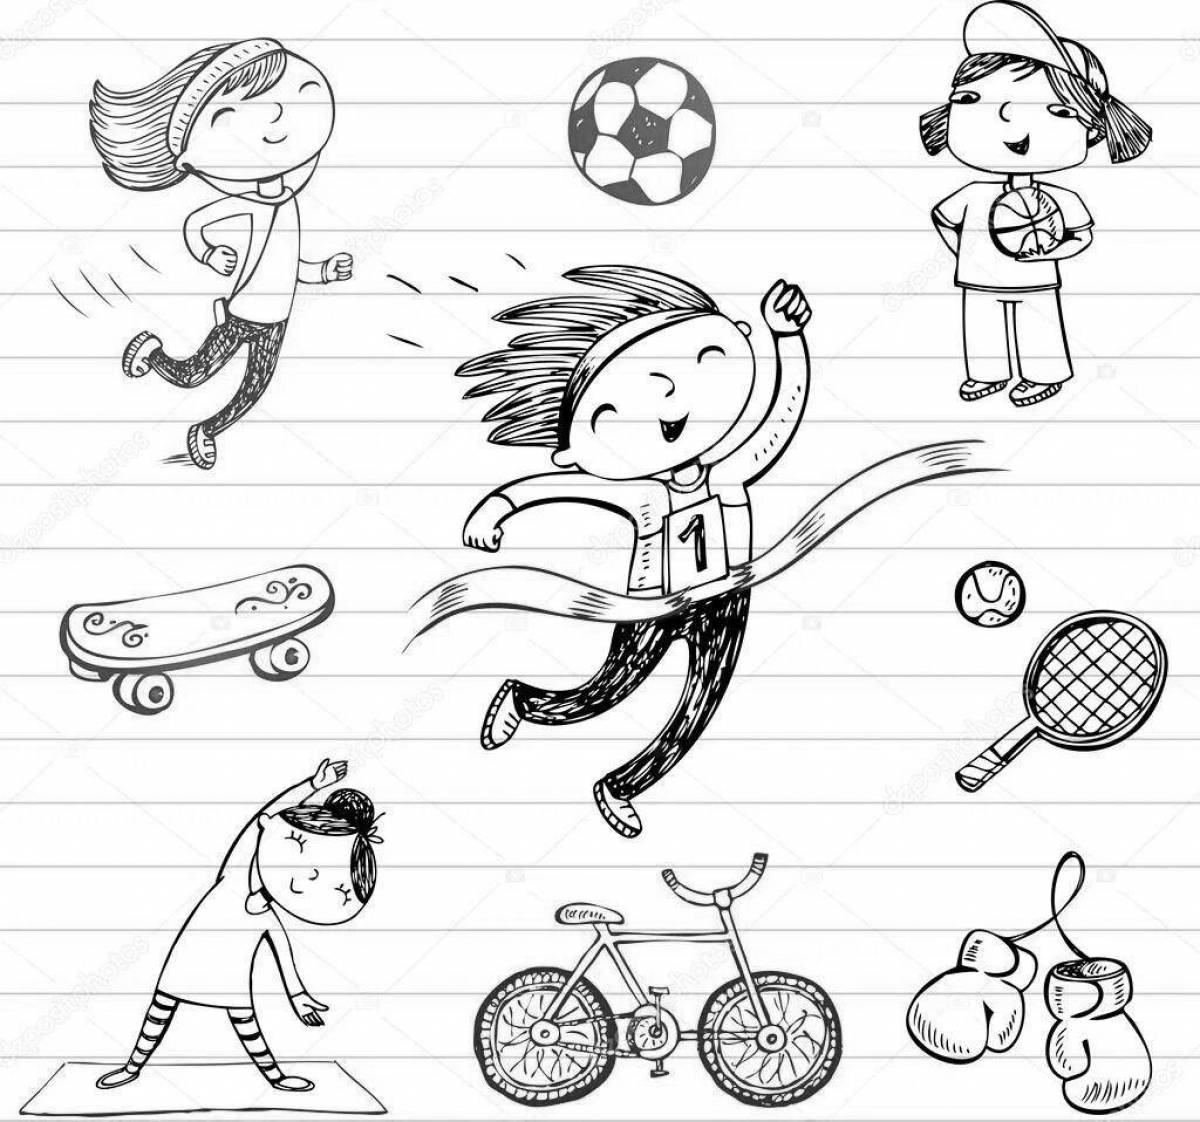 О спорте и здоровом образе жизни для детей #2